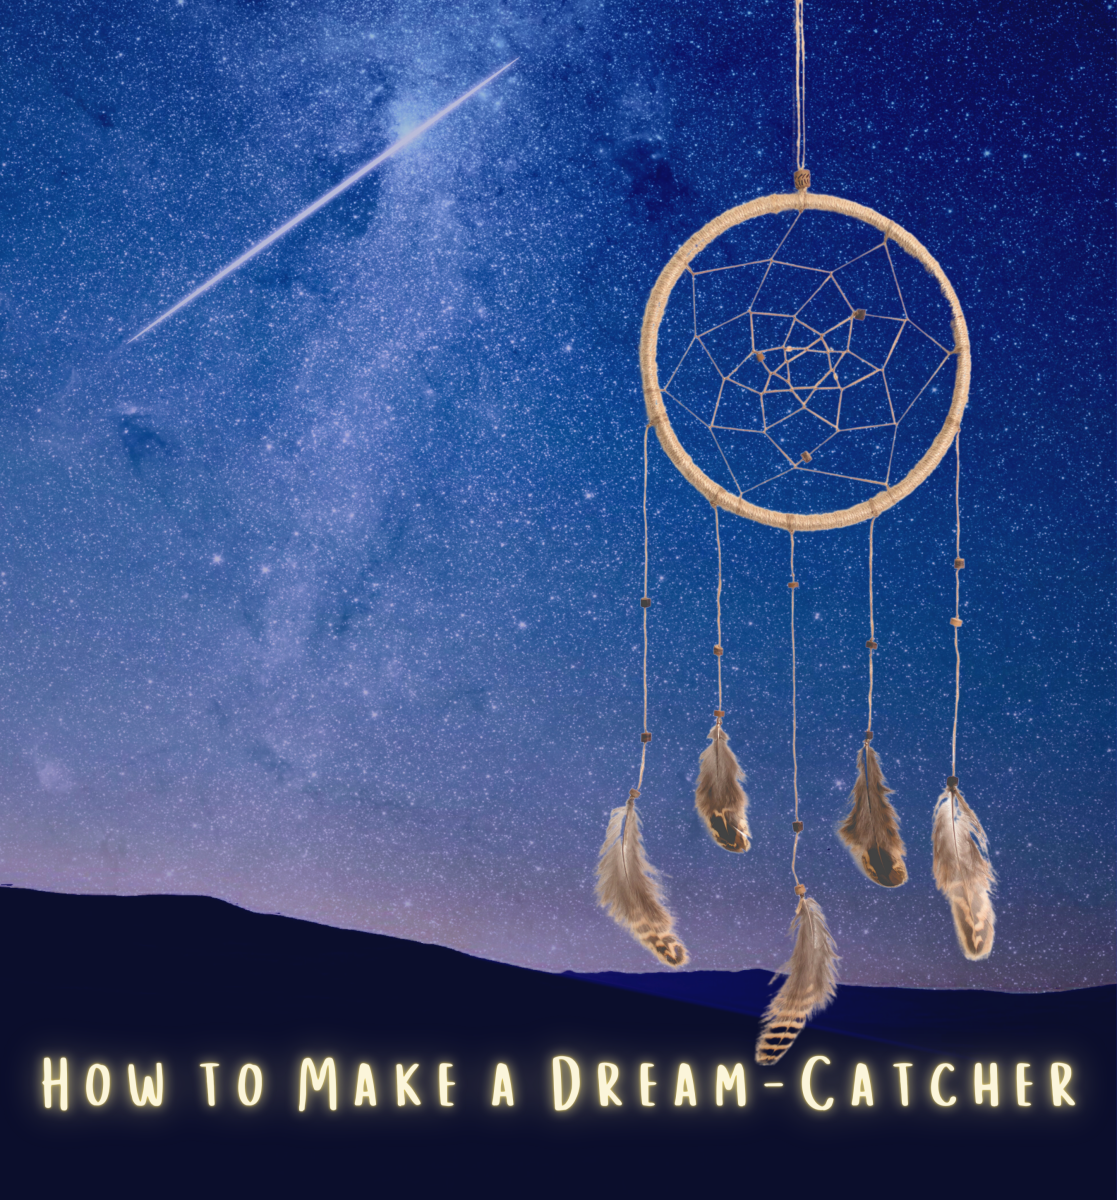 How to Make a Dreamcatcher